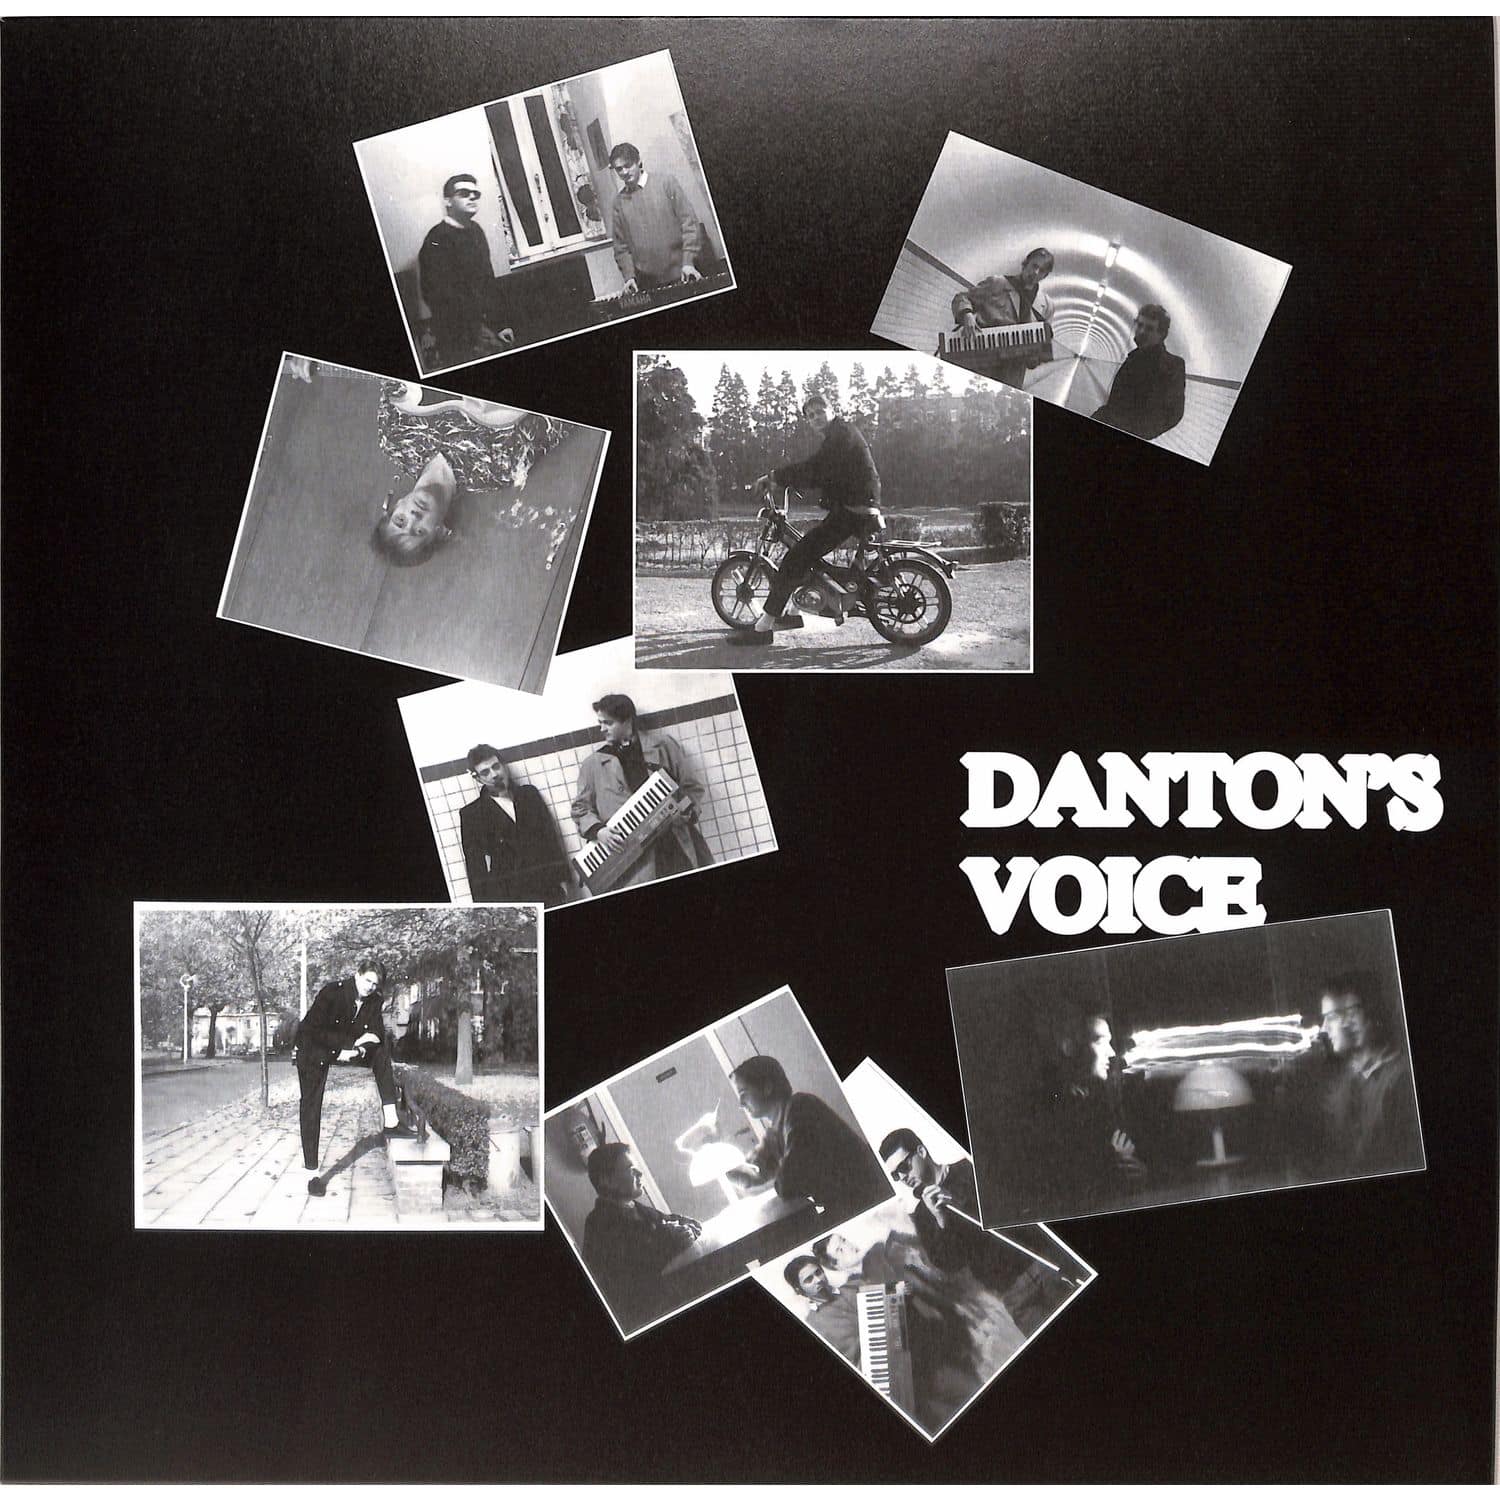 Dantons Voice - DANTONS VOICE SELECTED WORKS 89